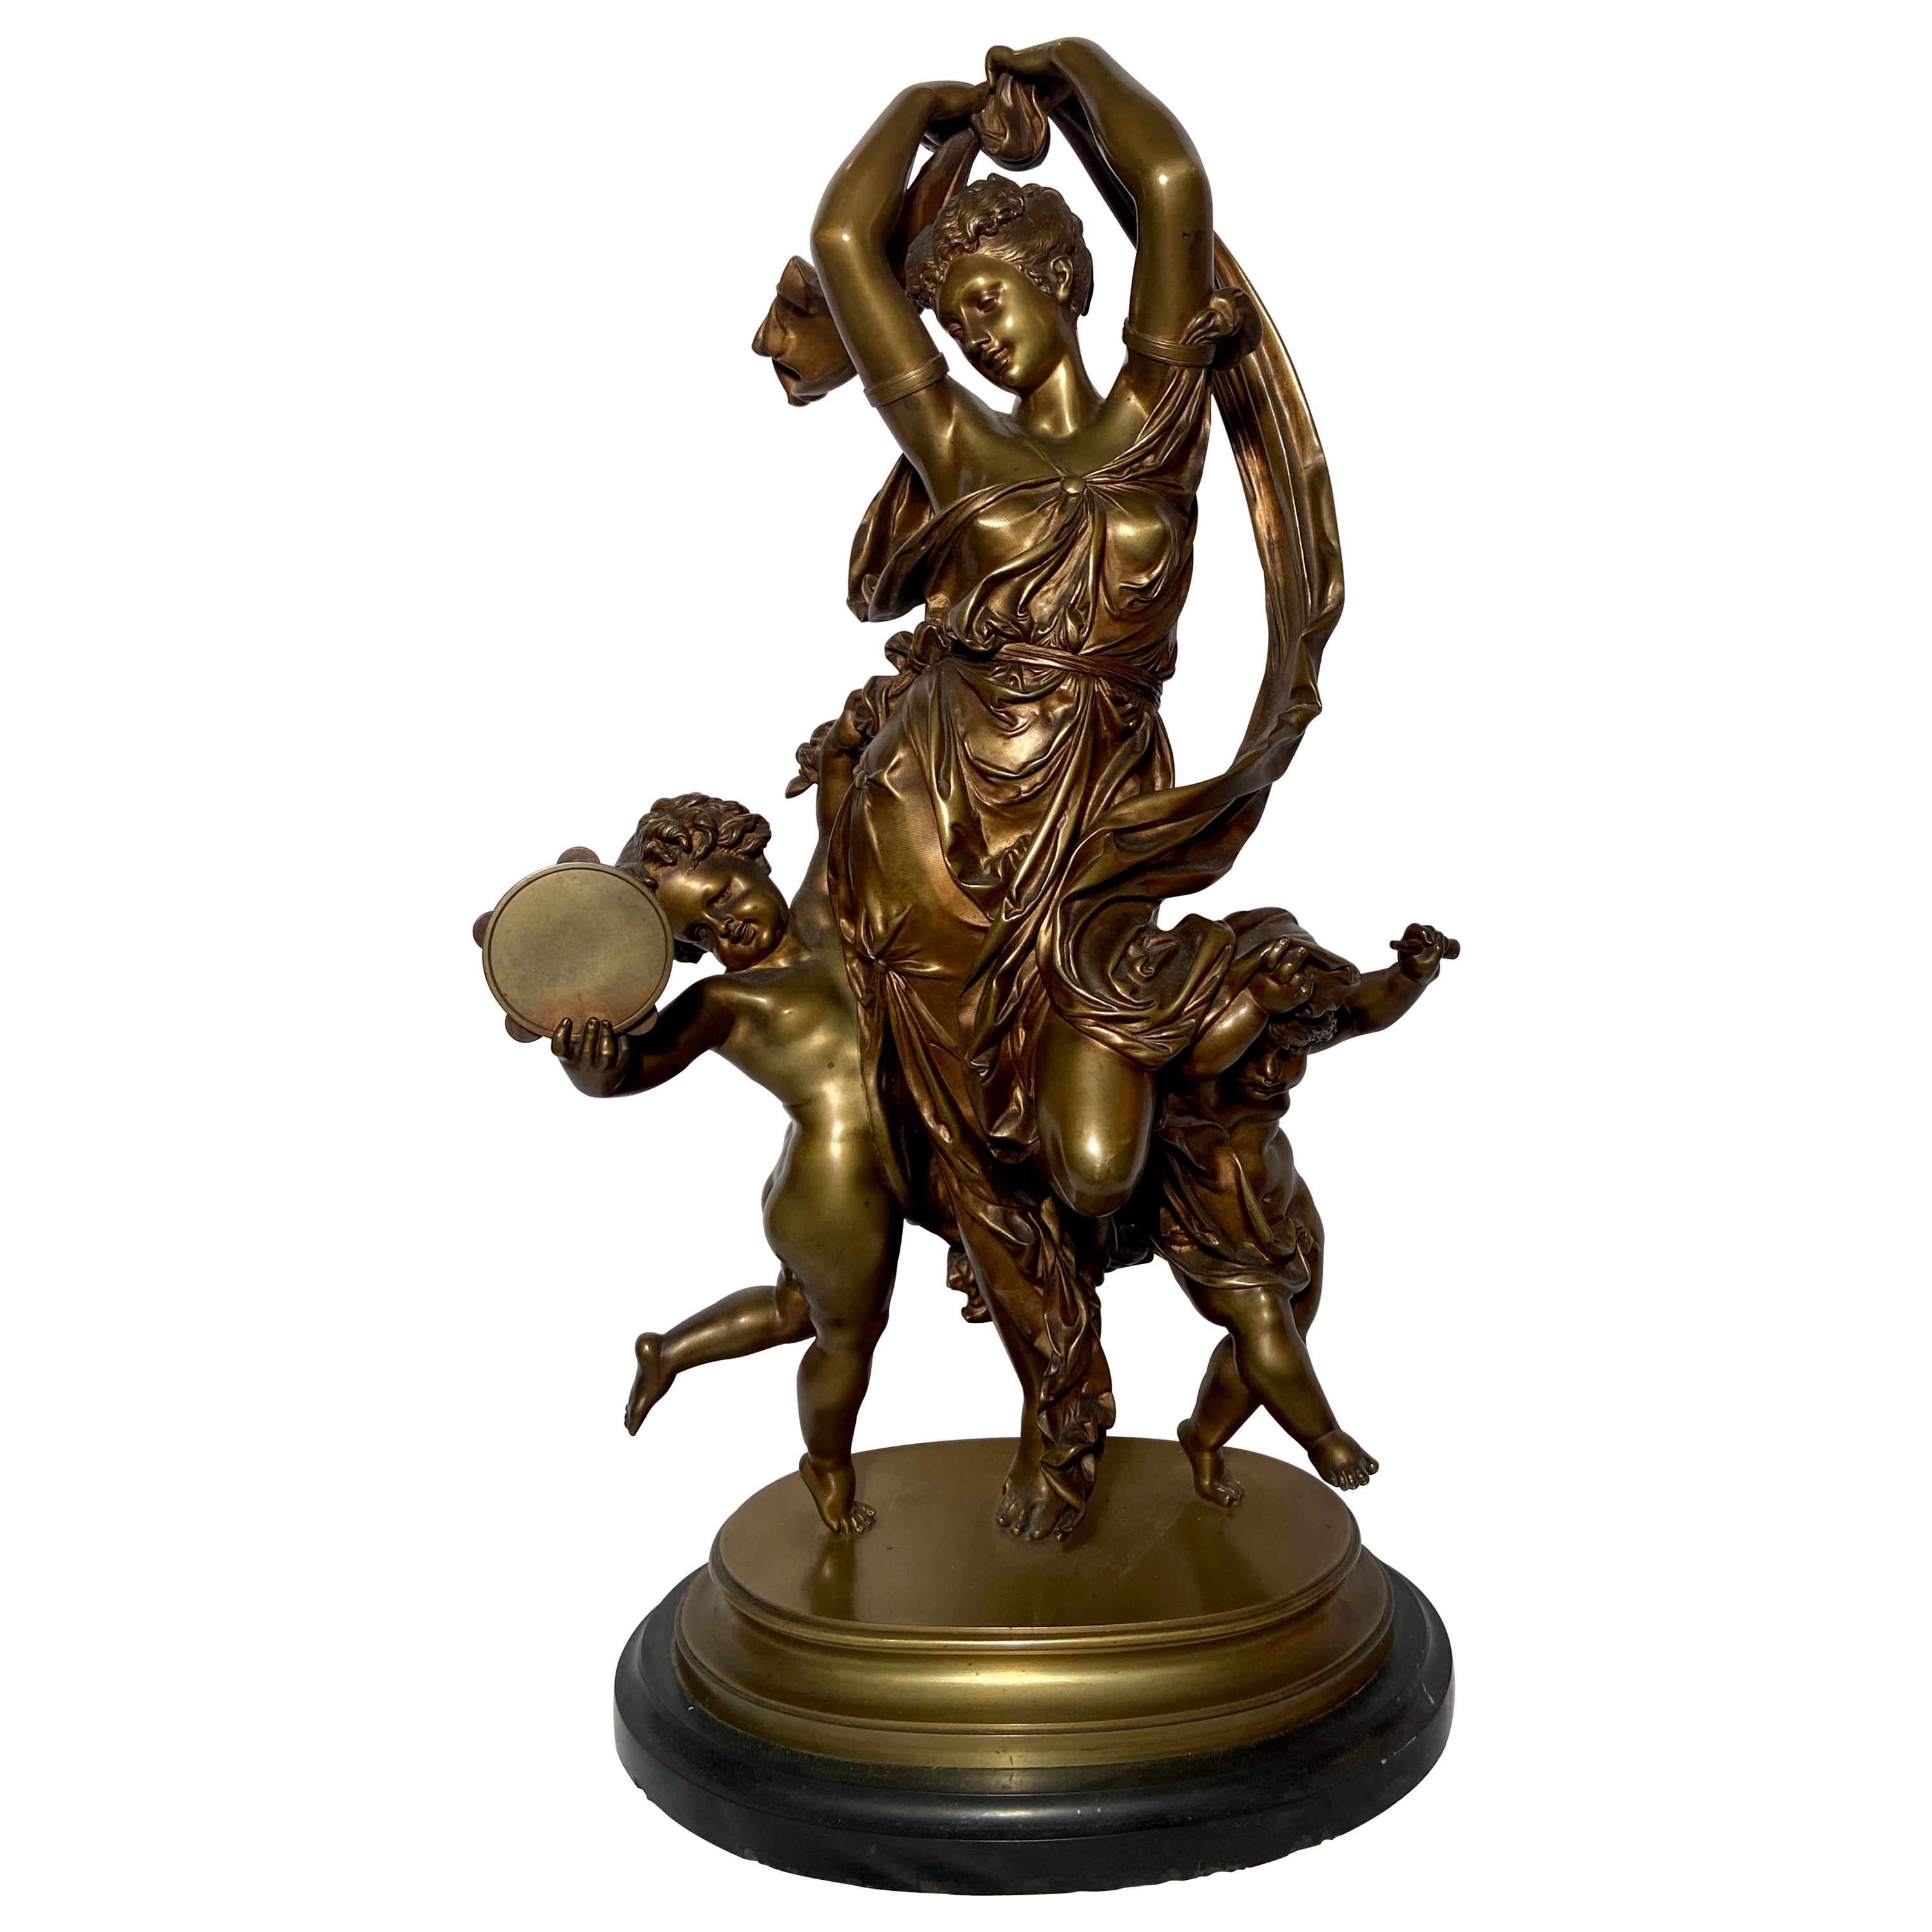 Ancienne statue néoclassique française « A. Carrier » en bronze patiné et or, vers 1890